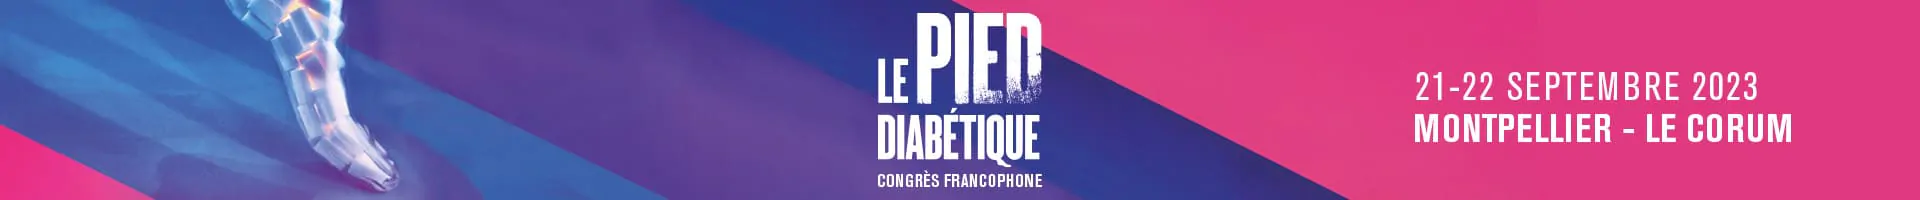 Bannière pour le congrès francophone du pied diabétique, le 21-22 septembre 2023 à Montpellier au Corum